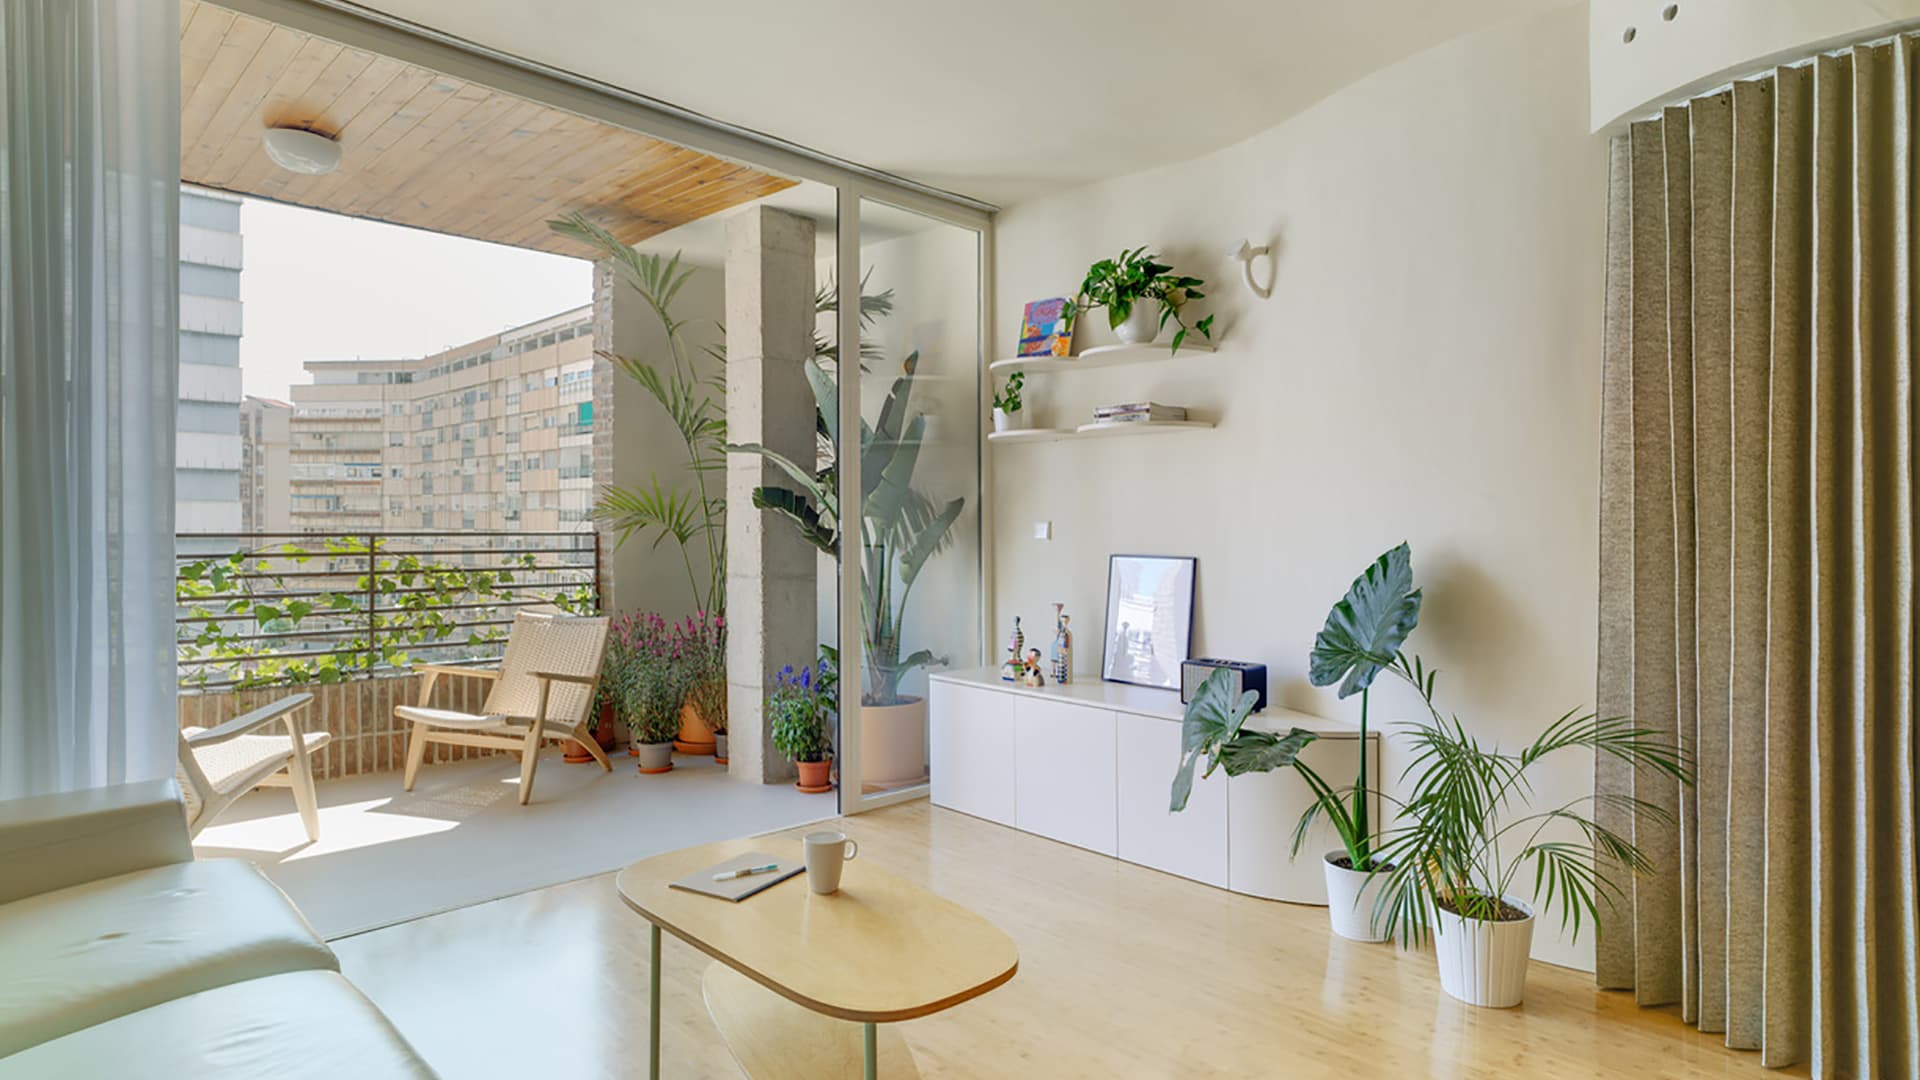 Испанская квартира с необычной планировкой – проект студии Laura Ortin Arquitectura